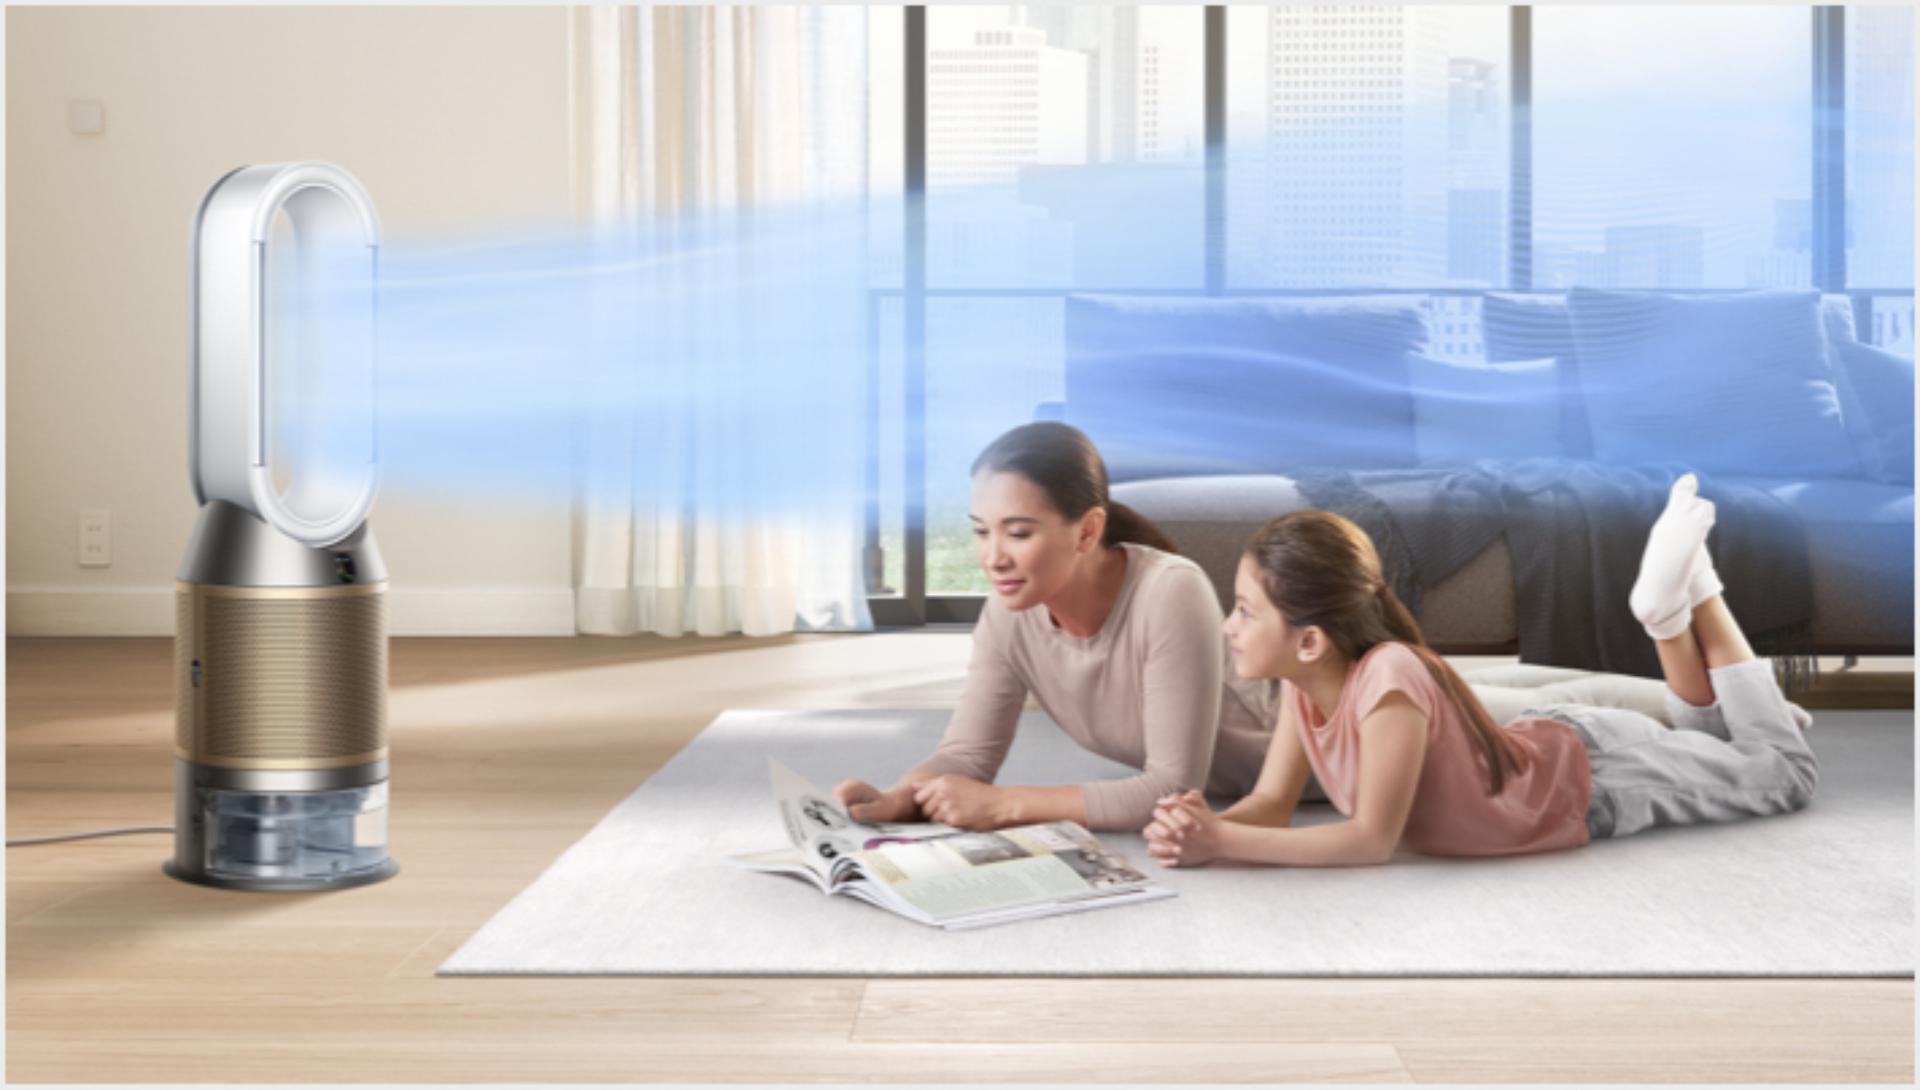 Mama ir dukra guli ant kilimo, o jas vėsina „Dyson“ oro valymo ir drėkinimo prietaisas